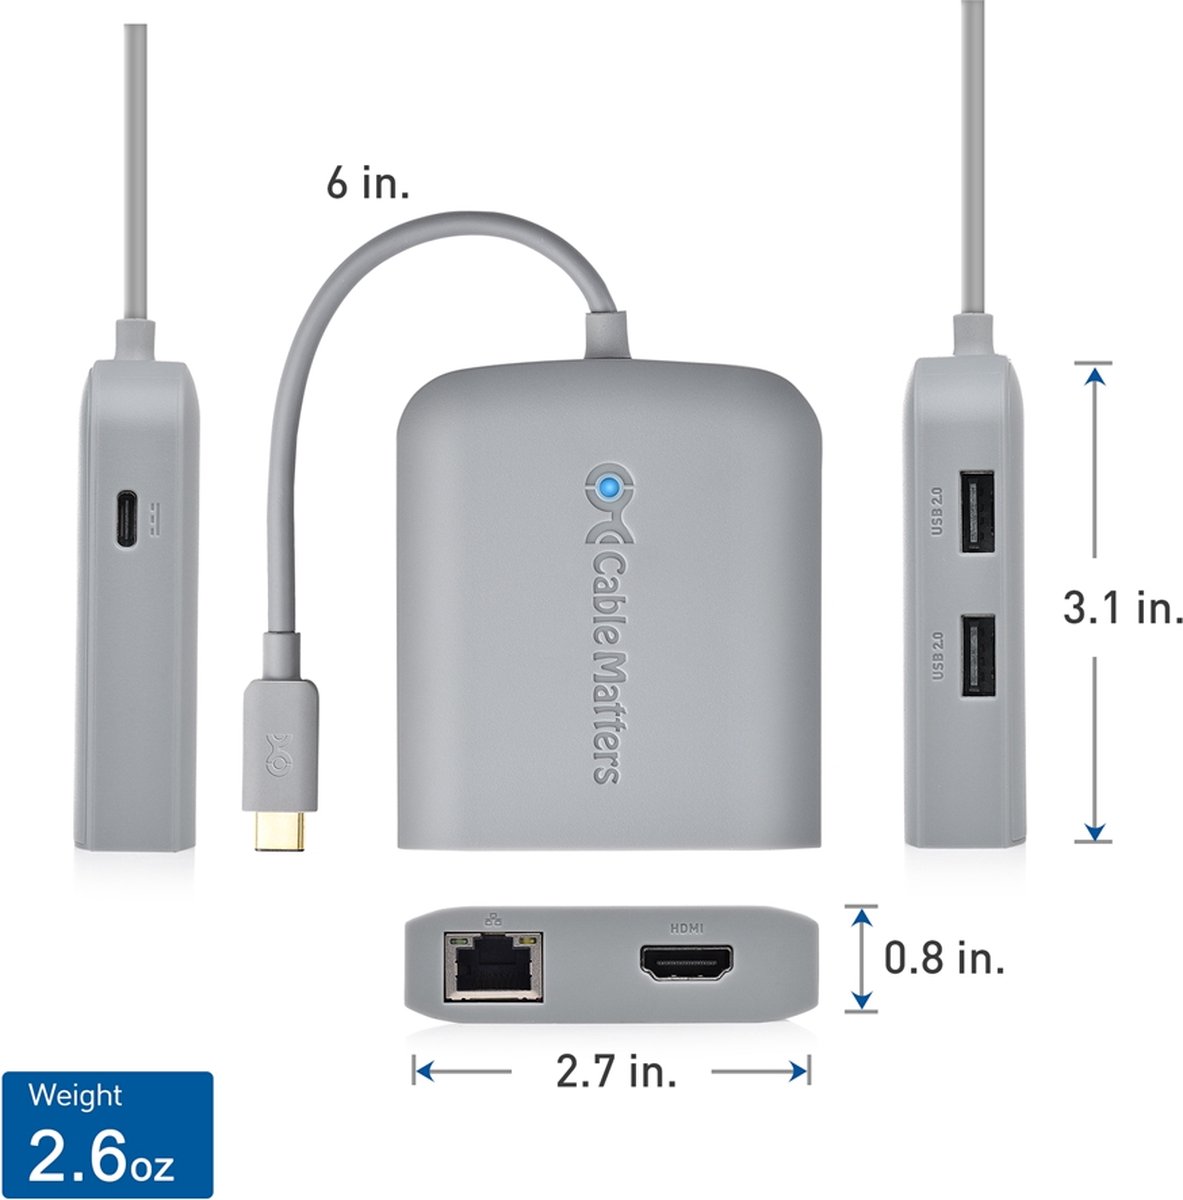 Cable Matters Adaptateur USB 3.0 vers HDMI Très Rapide (Adaptateur